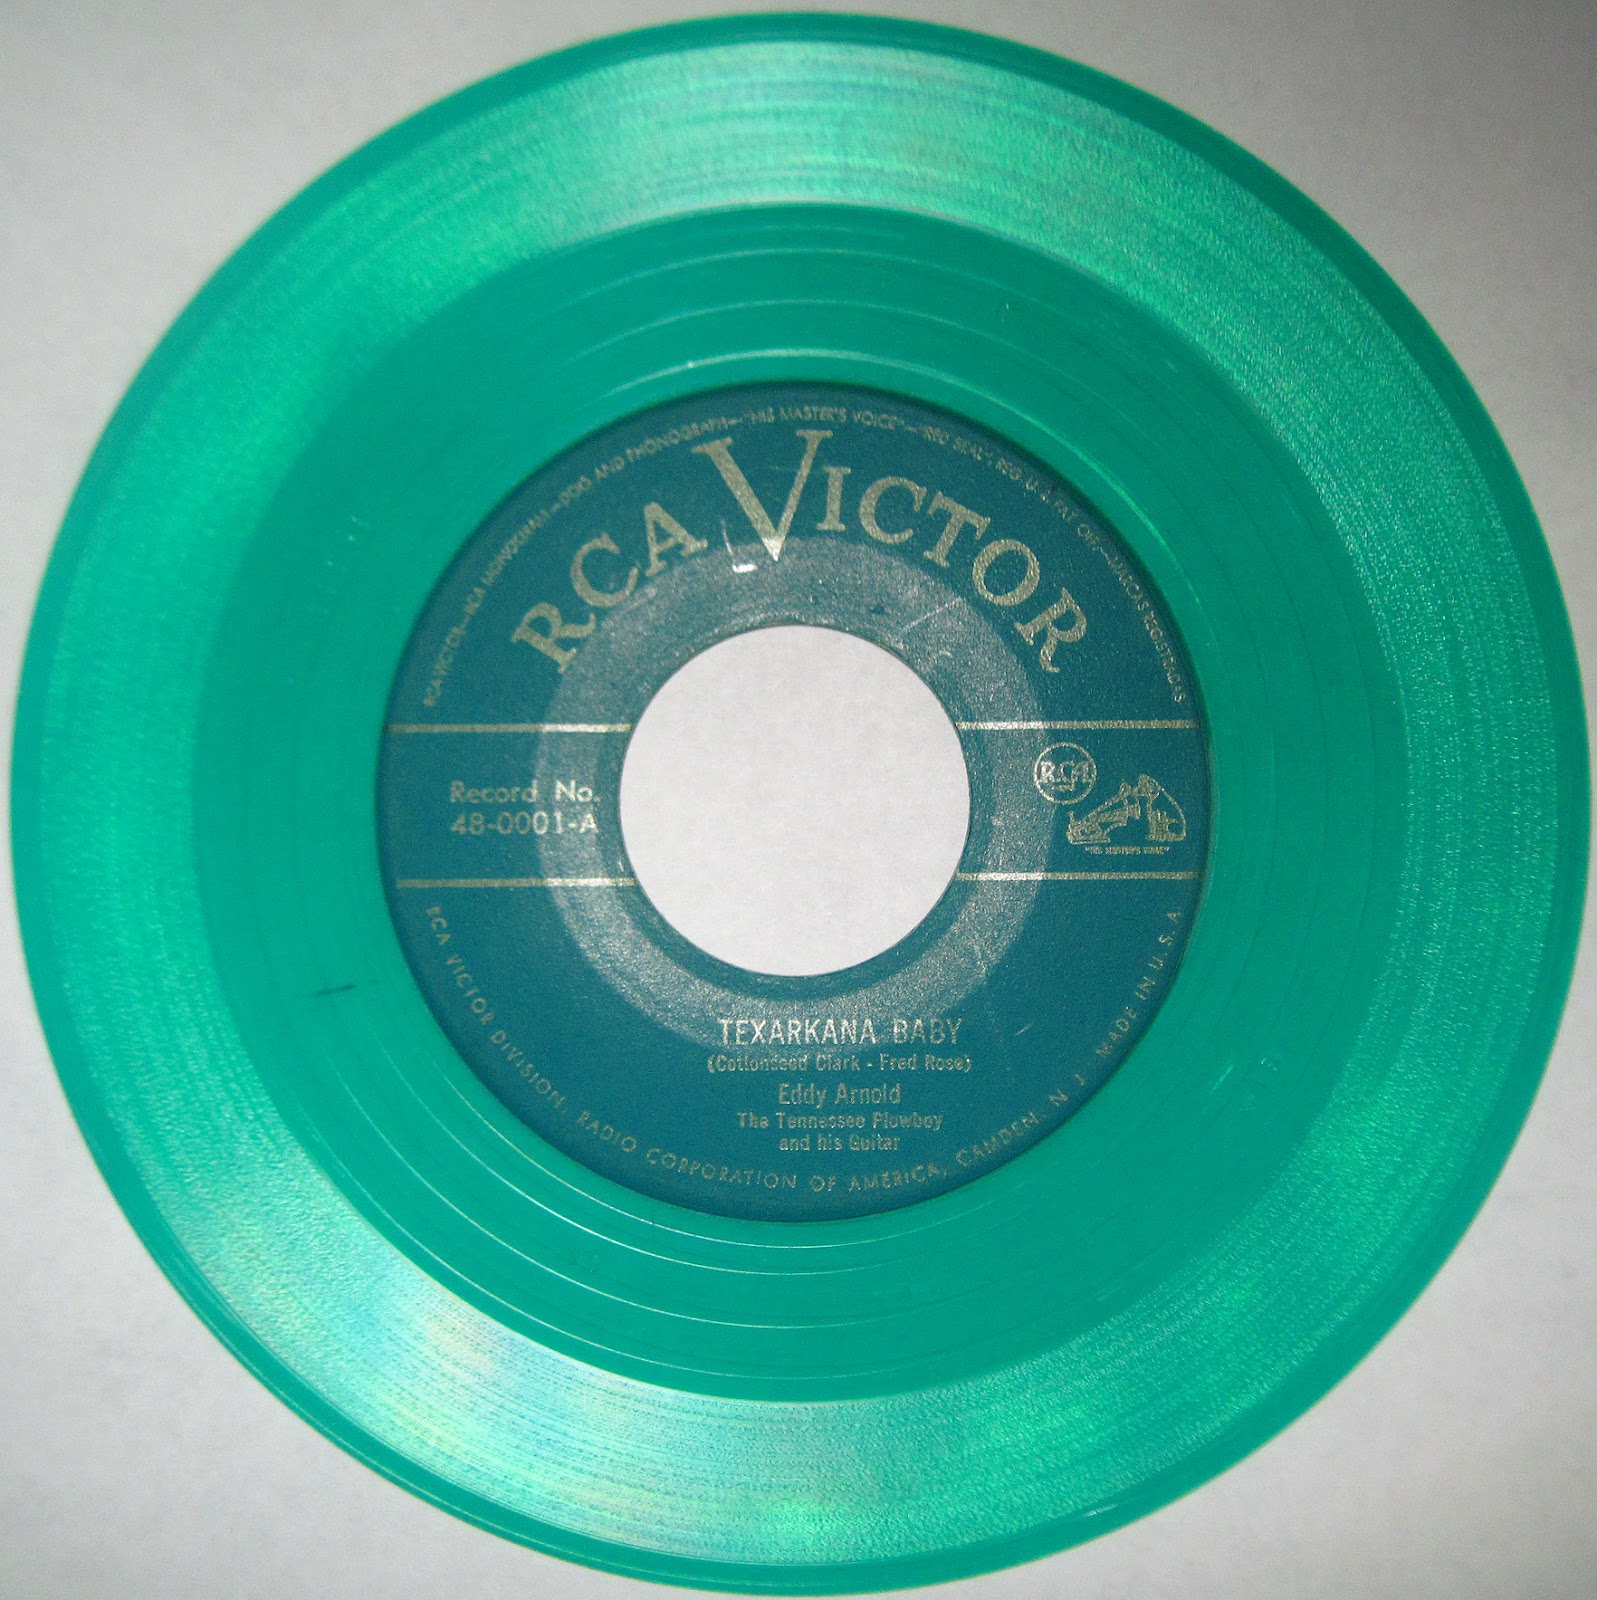 33 rpm vinyl record values